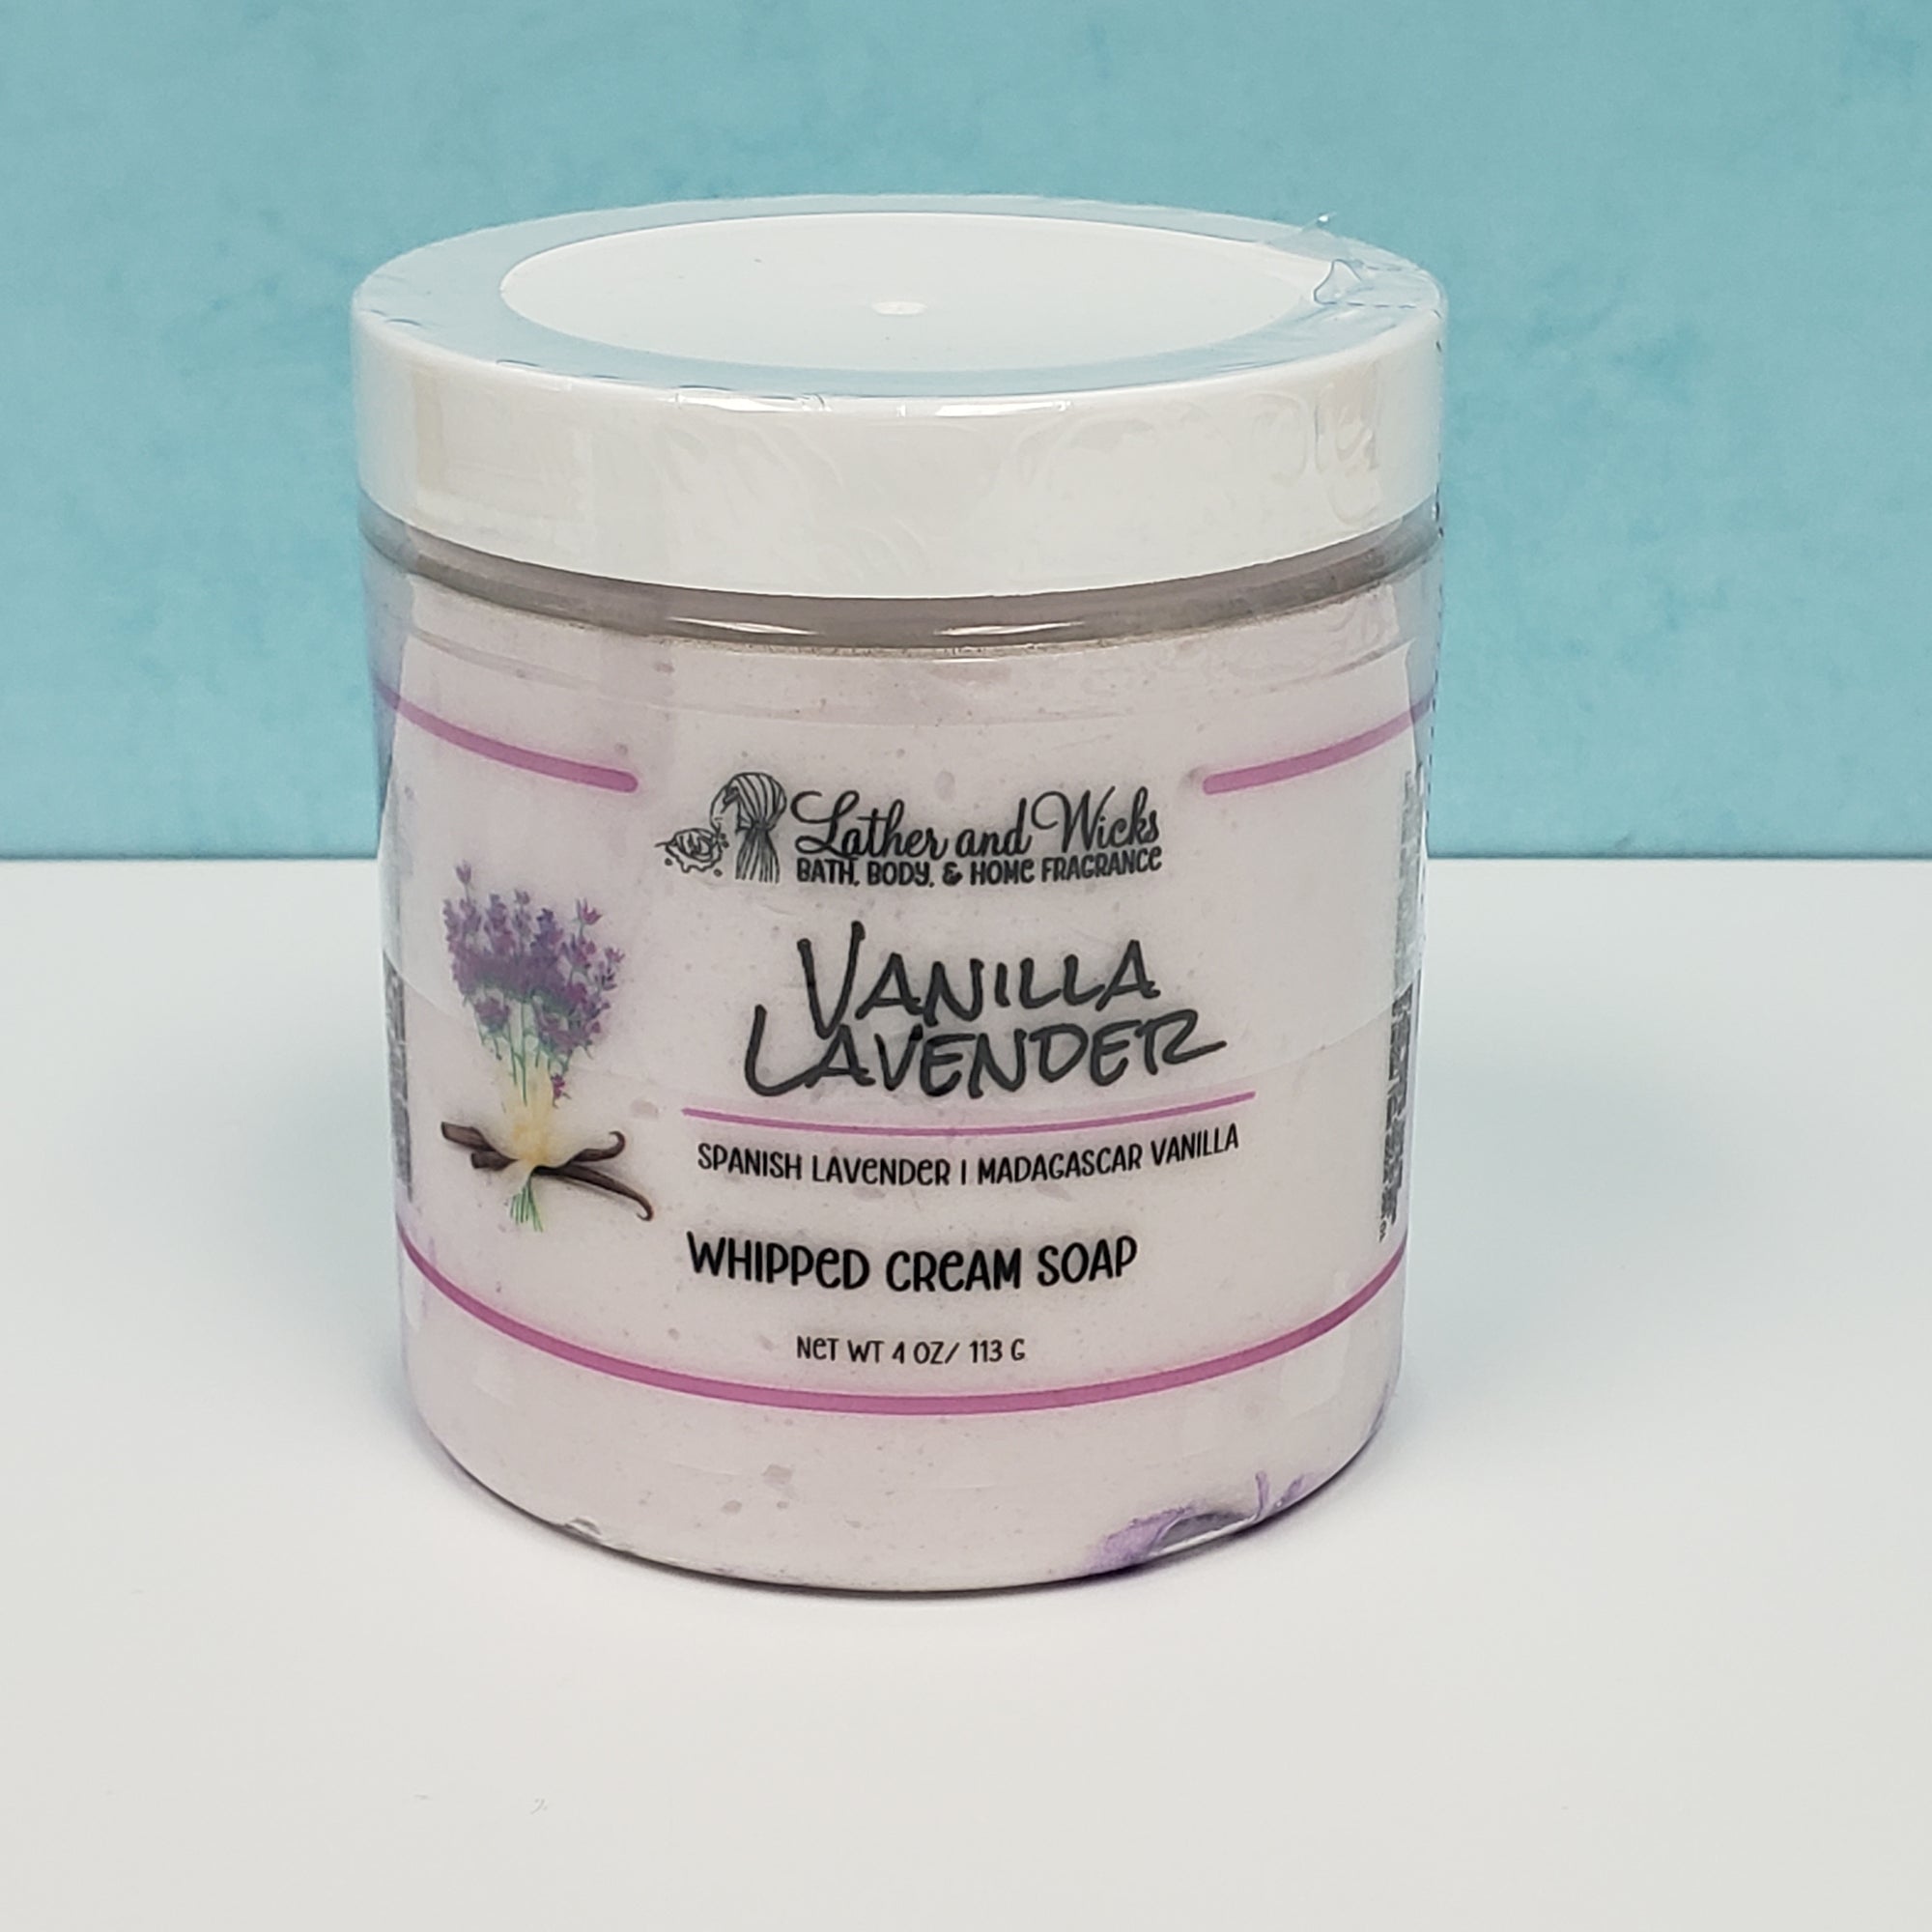 Lavender and Vanilla cream soap in 4 oz size